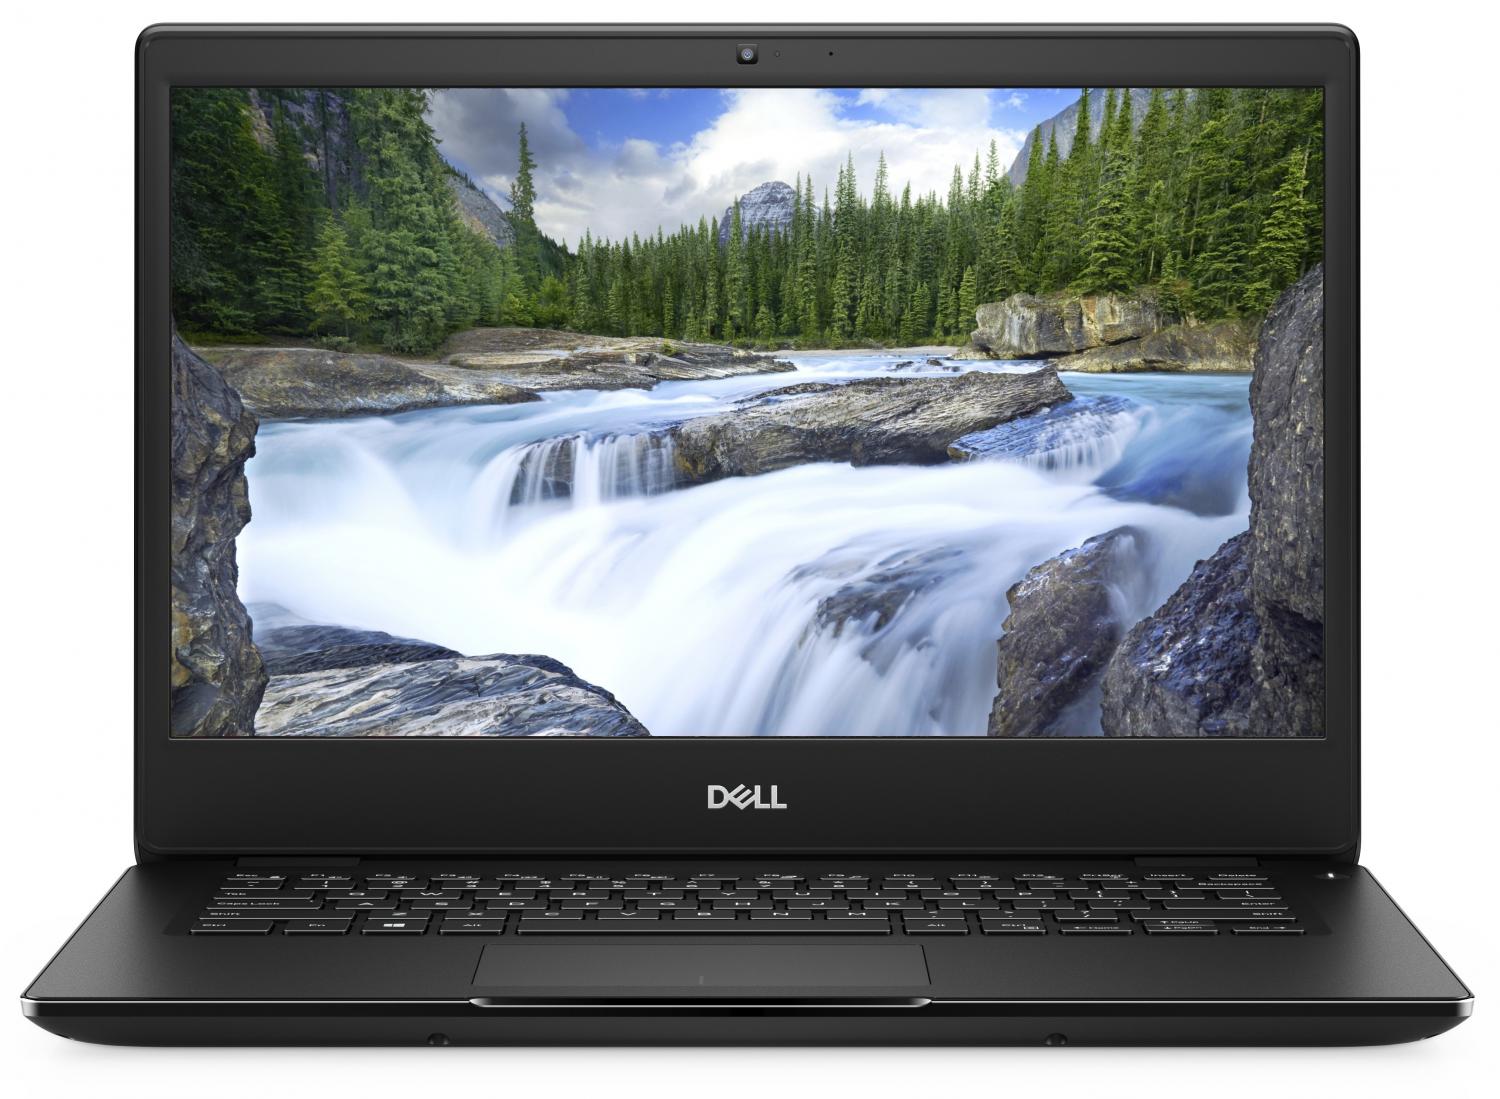 Ноутбук Dell Latitude 3400 Core i5-8265U (1,6GHz) 14,0" FullHD Antiglare 8GB (1x8GB) DDR4 256GB SSD Intel UHD 620 TPM 4 cell (56 WHr) W10 Pro 1 year NBD